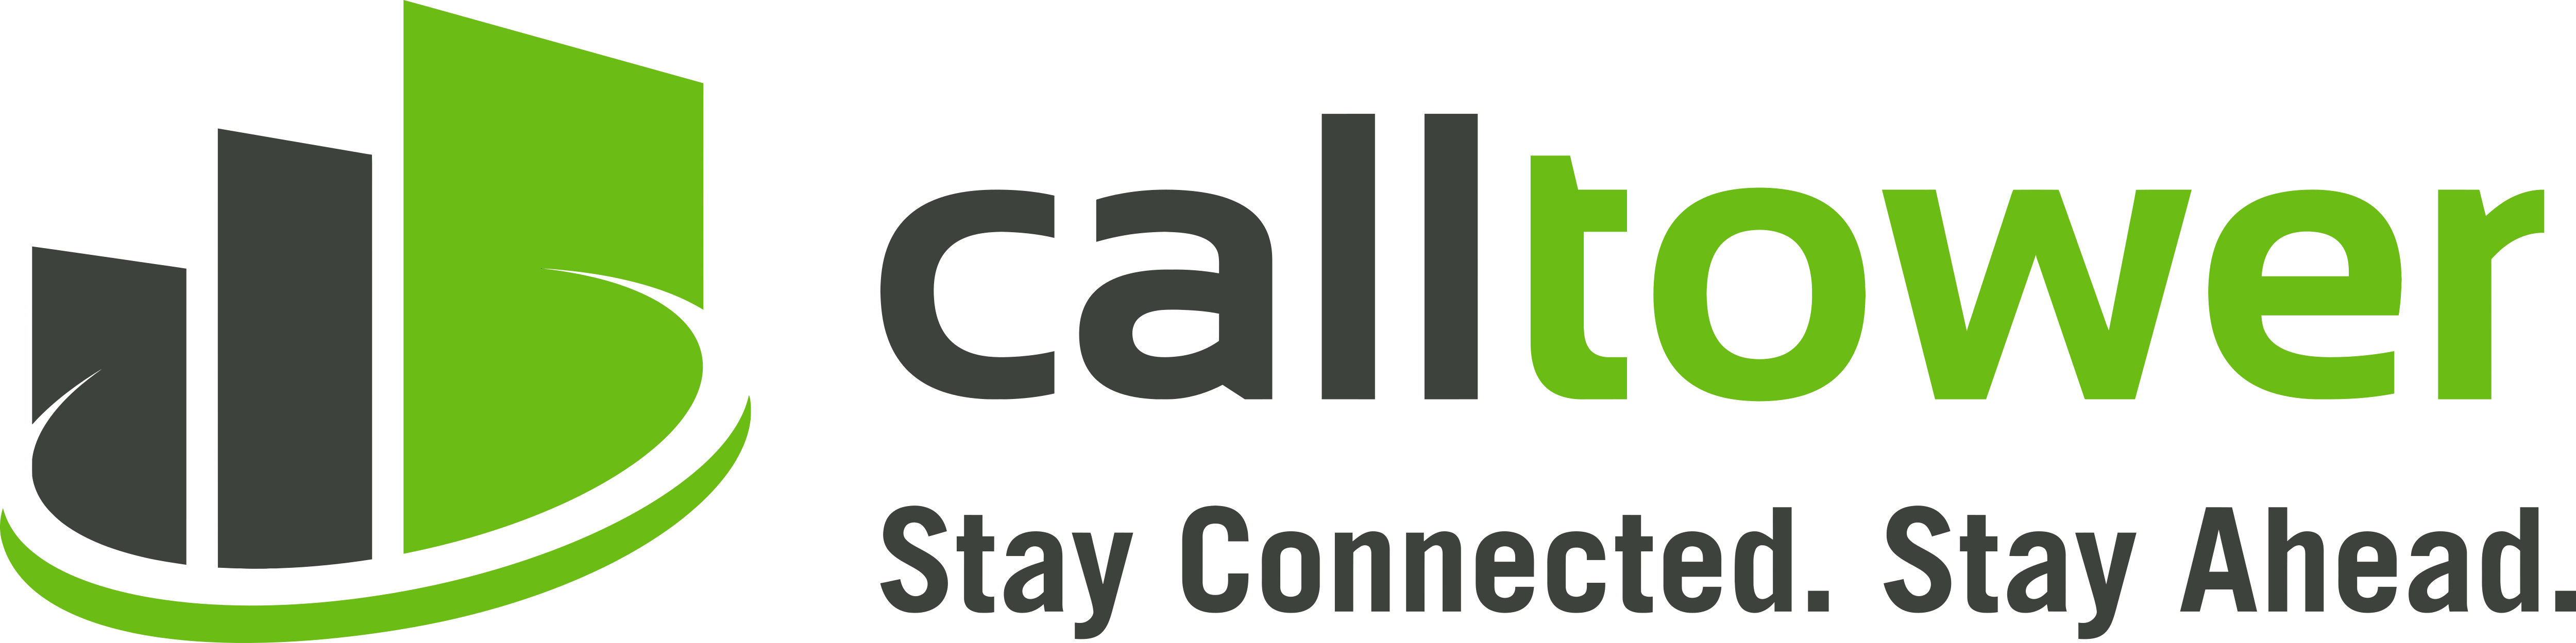 CallTower_Logo